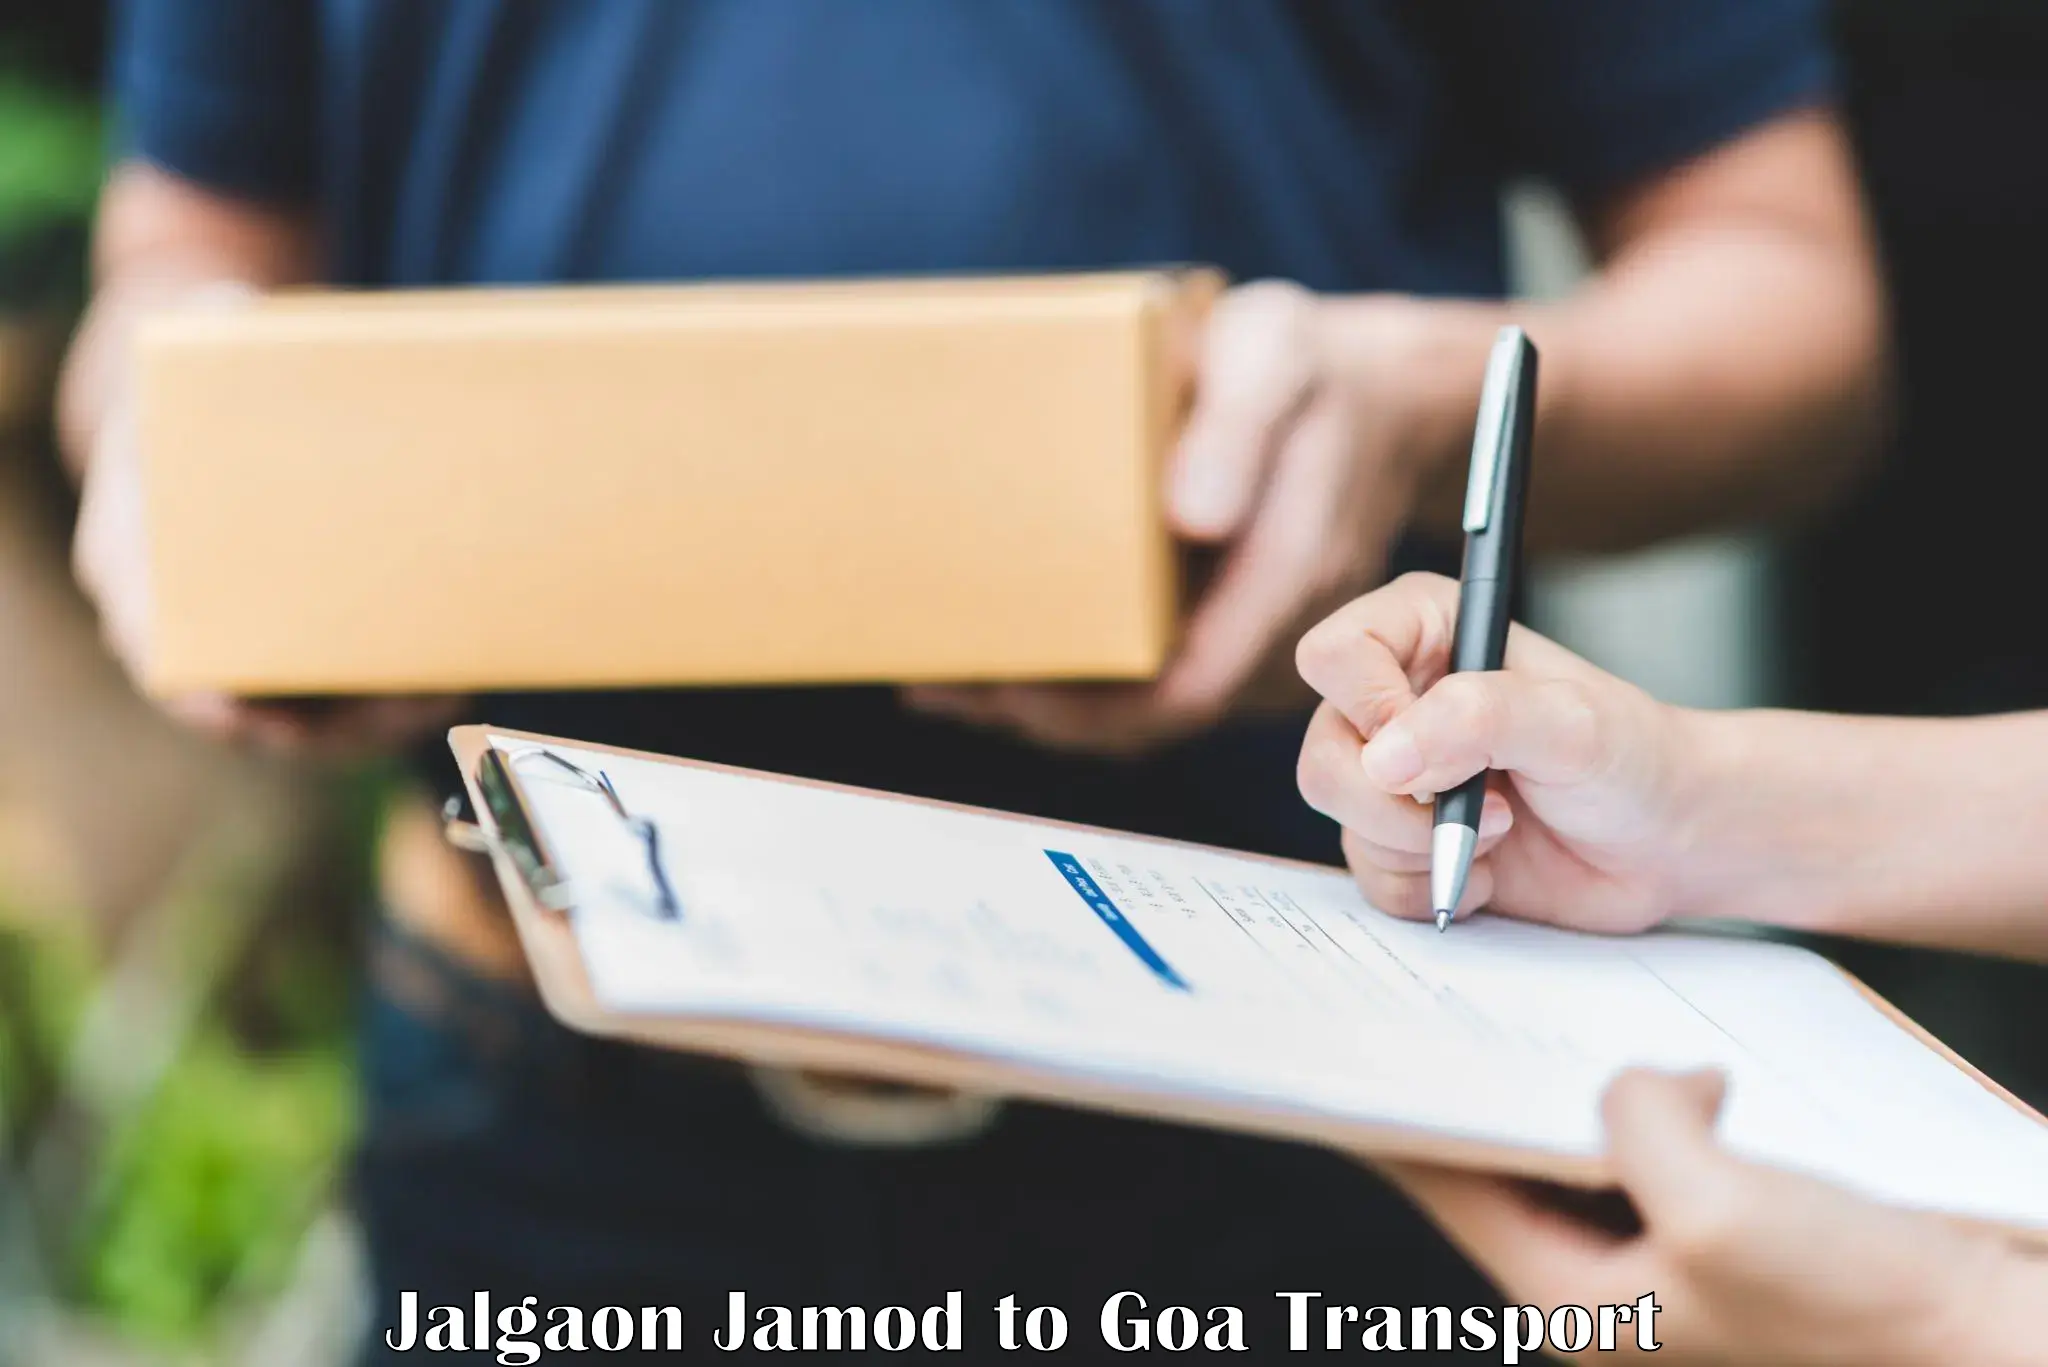 Nationwide transport services Jalgaon Jamod to IIT Goa